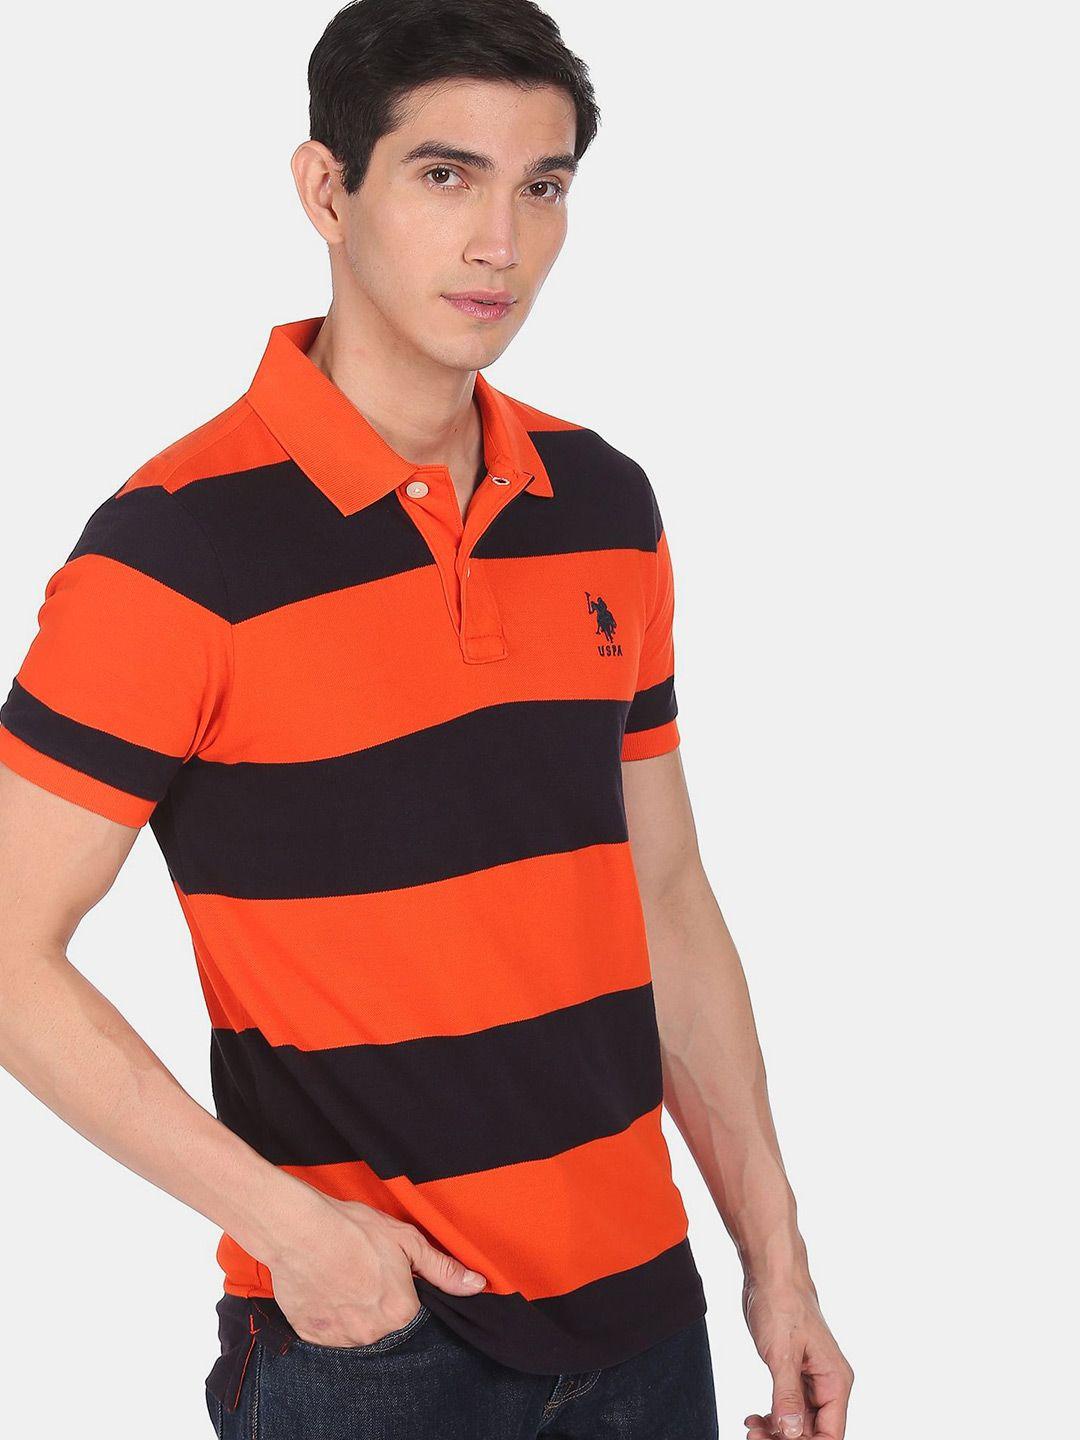 u s polo assn men orange & black striped polo collar applique t-shirt